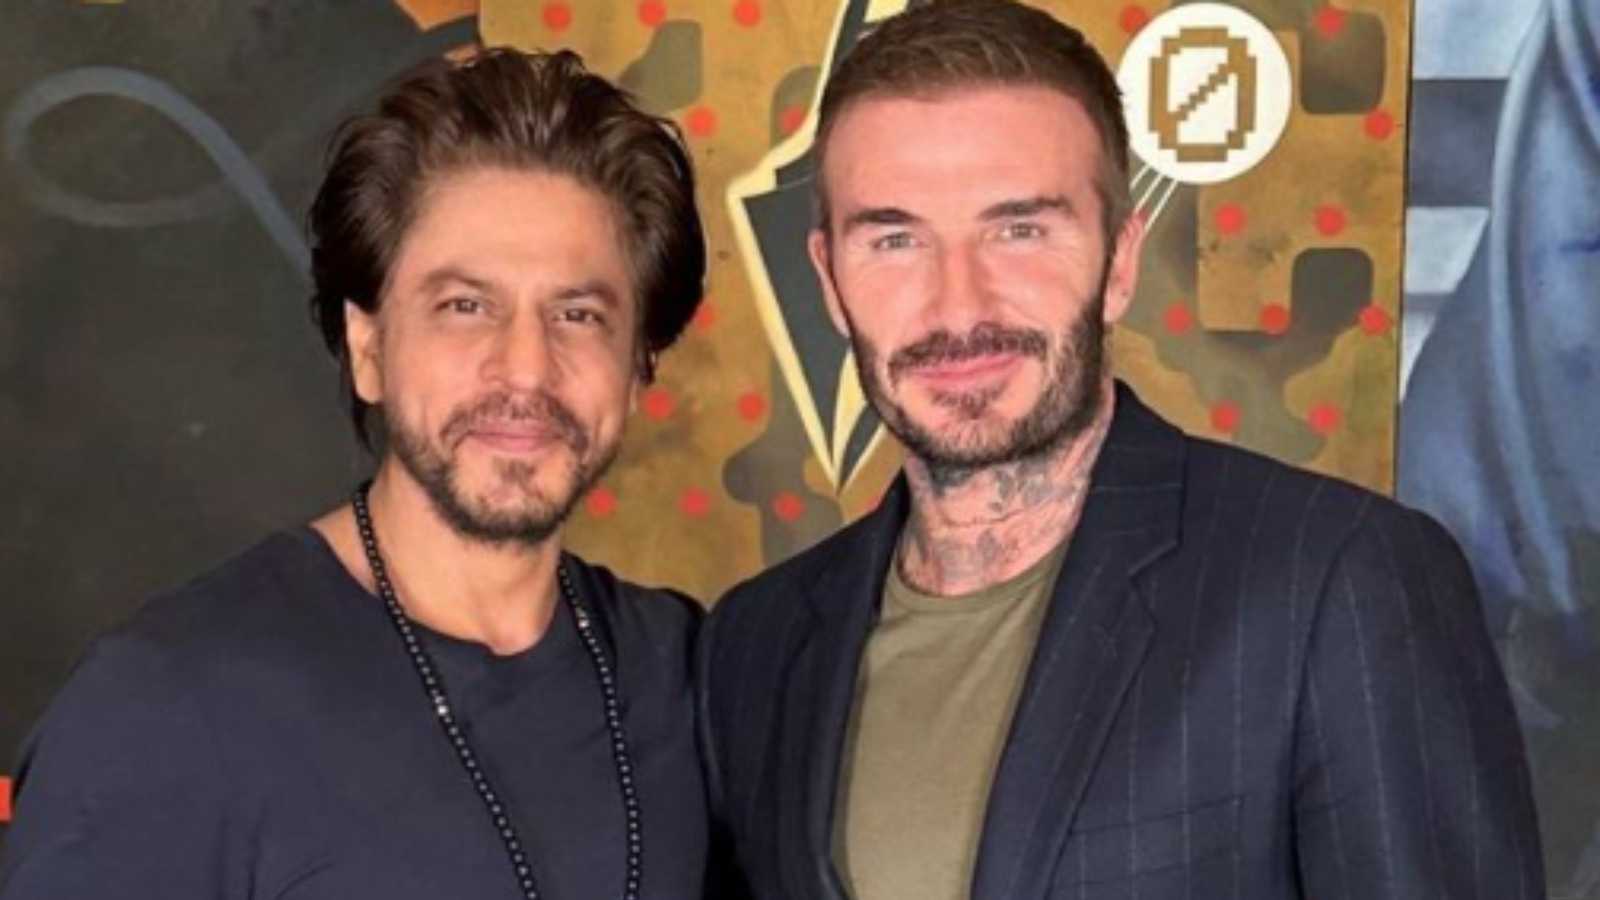 Shah Rukh Khan with David Beckham